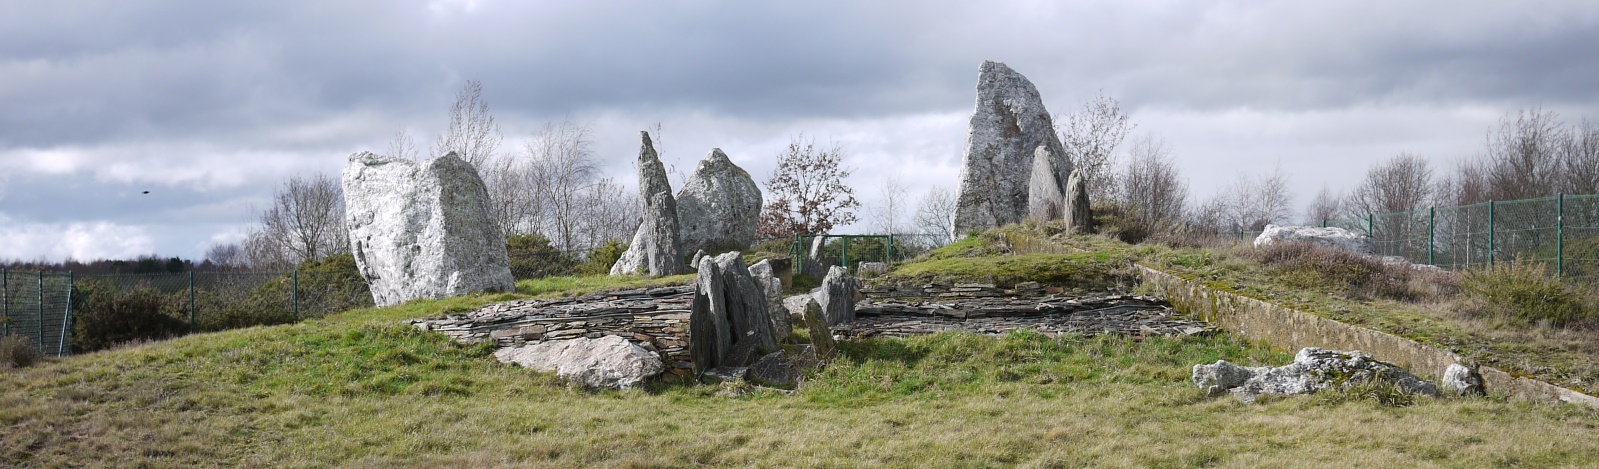 Le cairn de Château-Bû surmonté de monolithes de quartz blanchâtre - Photo musardise.com